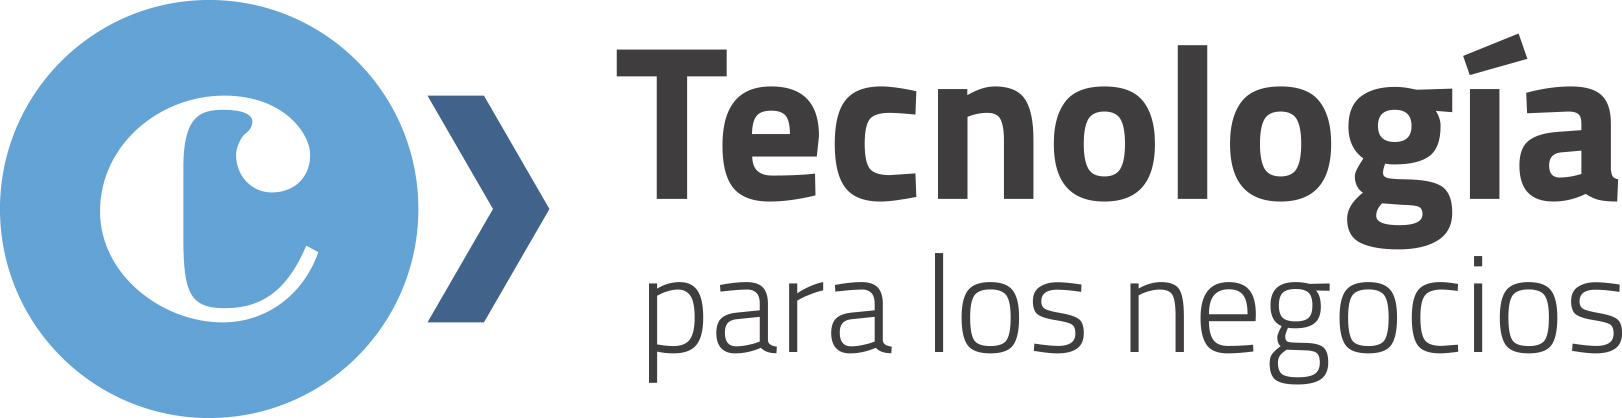 logo-tecnologia-negocios